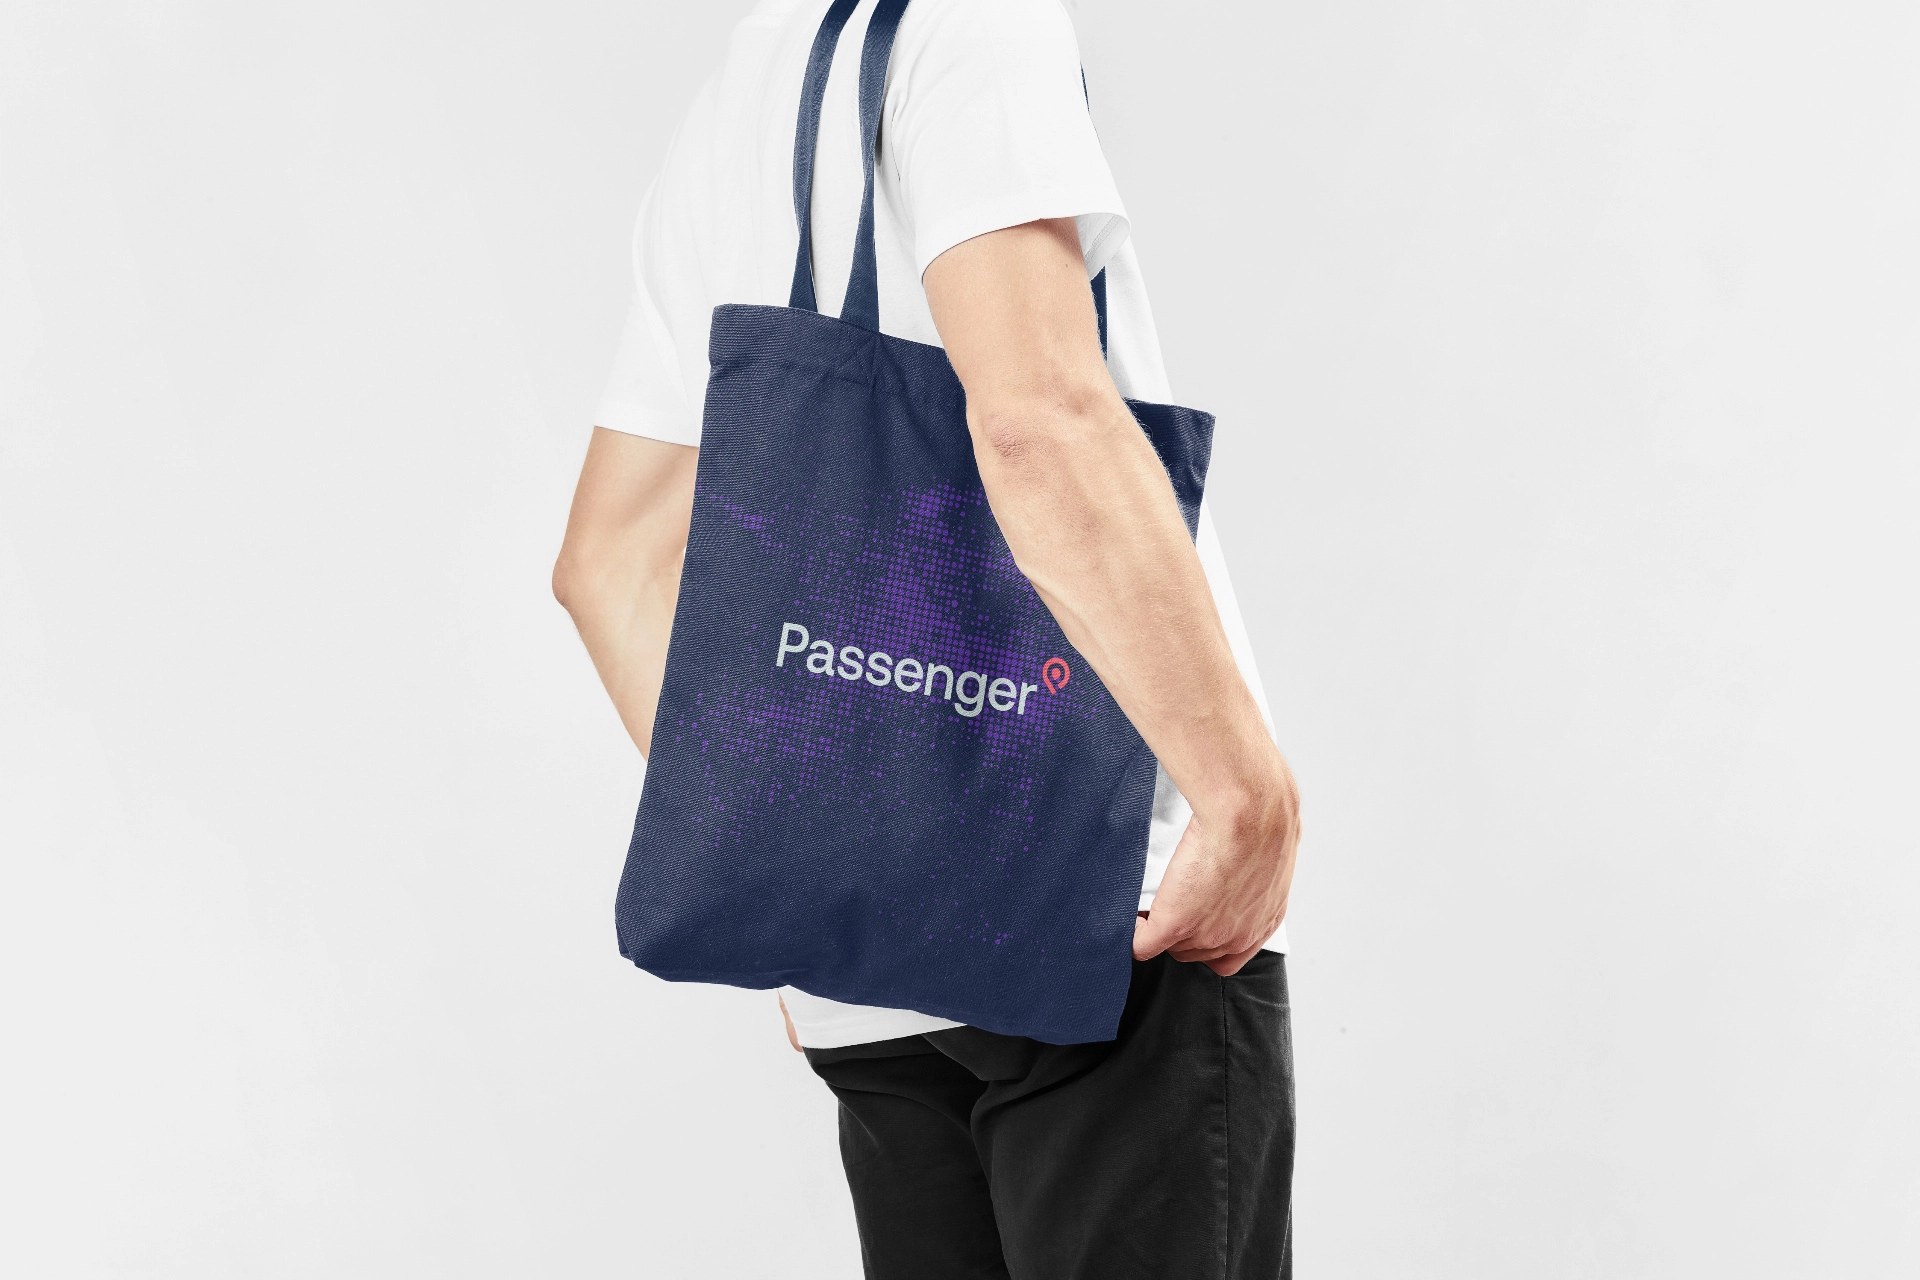 Passenger Brand Bag